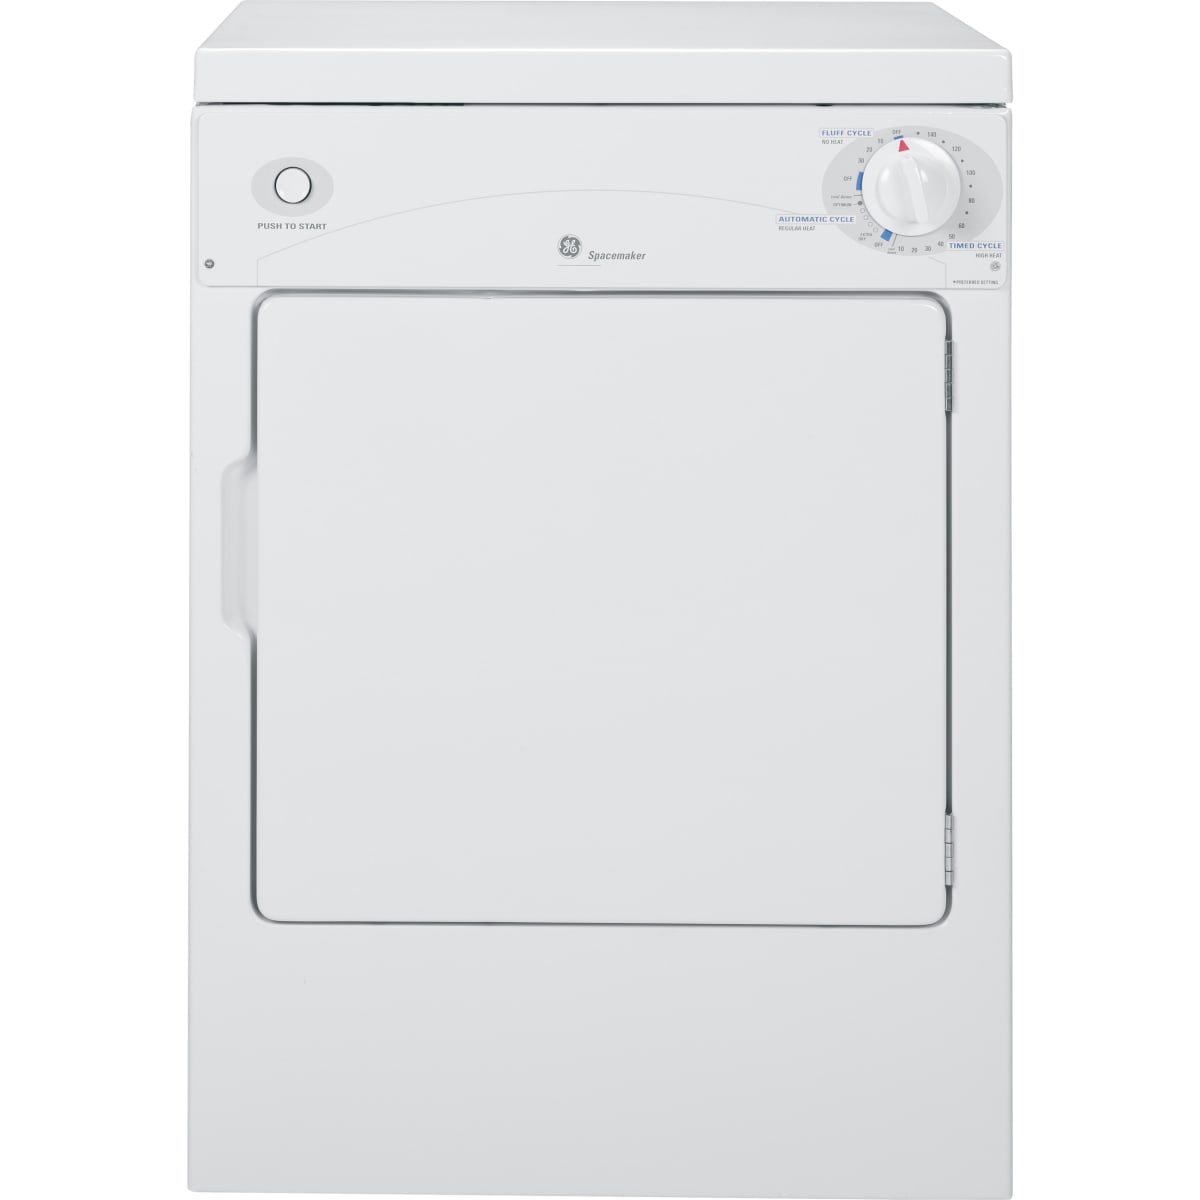 GE Dryers Laundry Appliances - DSKP333EC